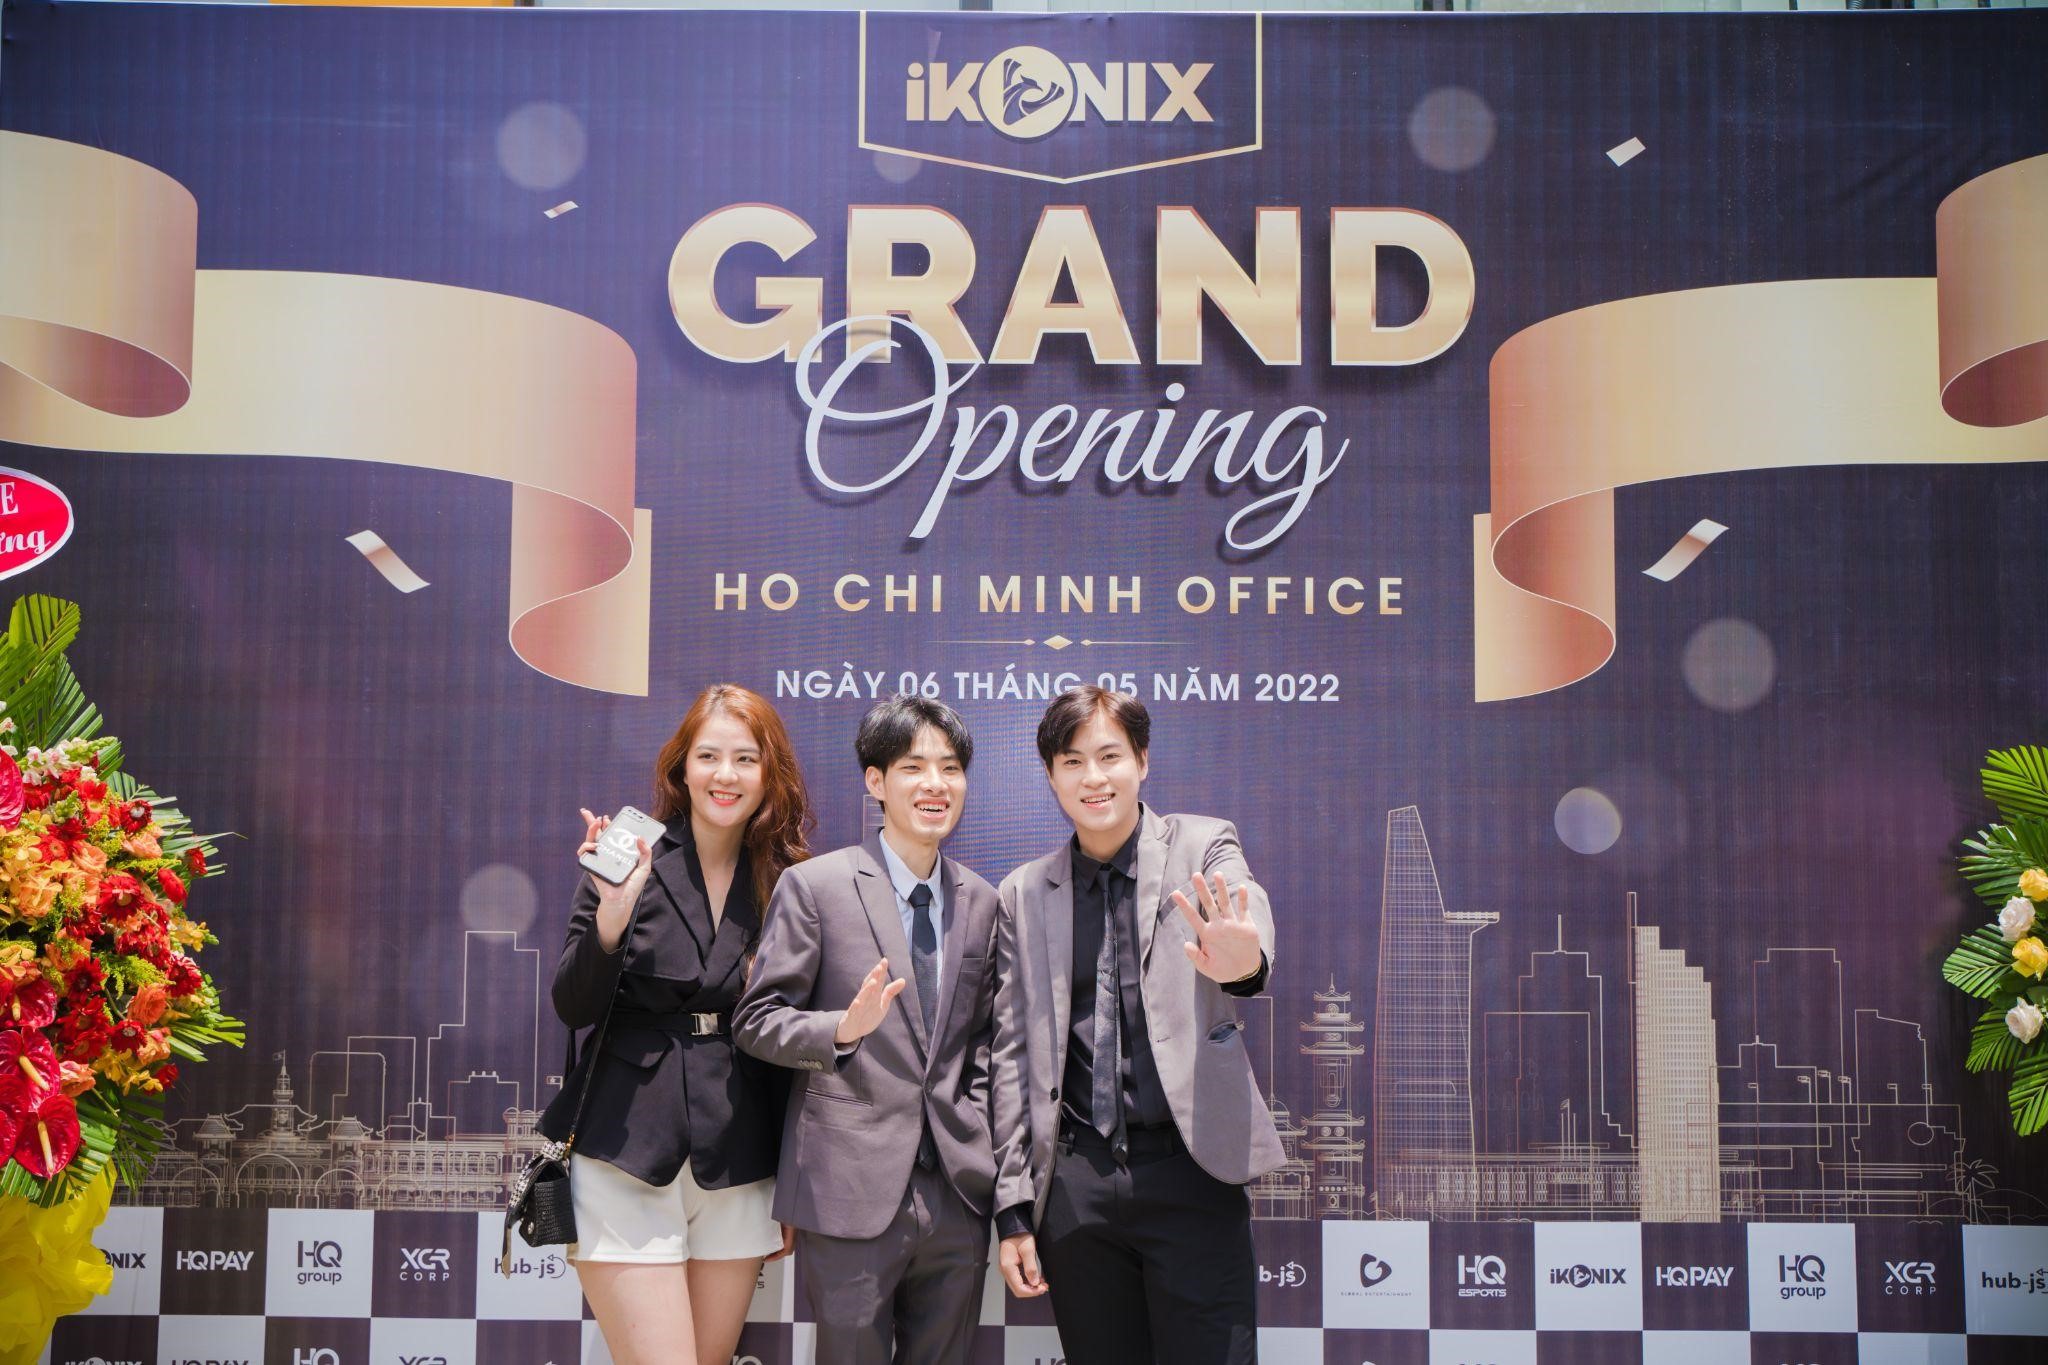 Vũ Minh Phương - Tân Giám đốc phát triển nền tảng iKonix Entertainment và tâm sự nghề quản lý